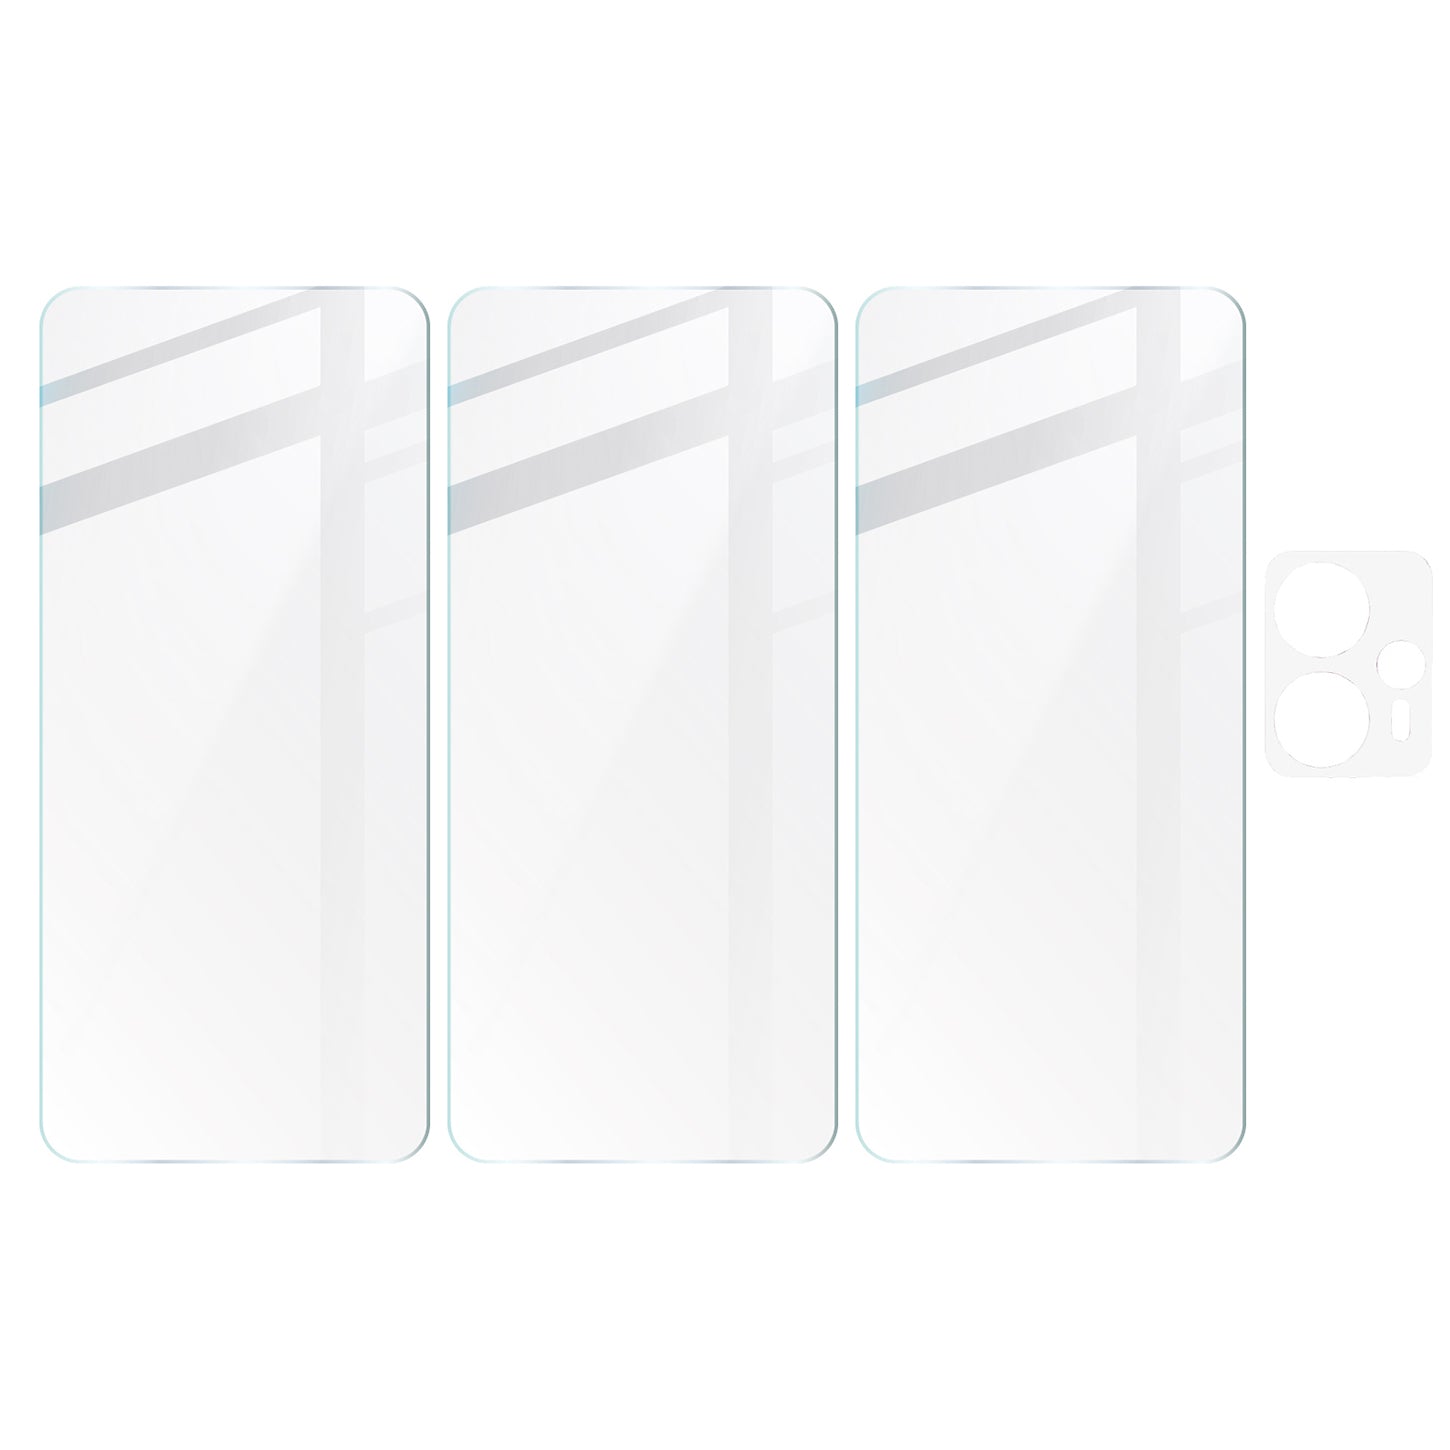 Gehärtetes Glas Bizon Glass Clear 2 - 3 Stück + Kameraschutz, Moto G13/G23 4G